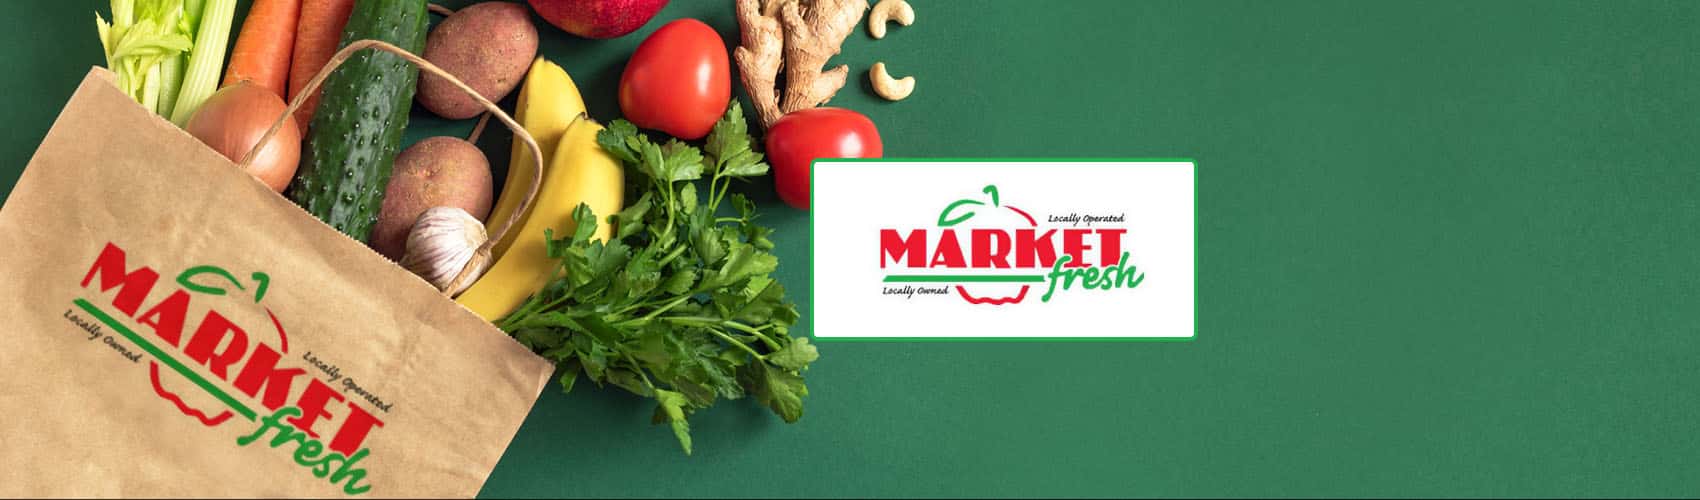 Market Fresh Logo